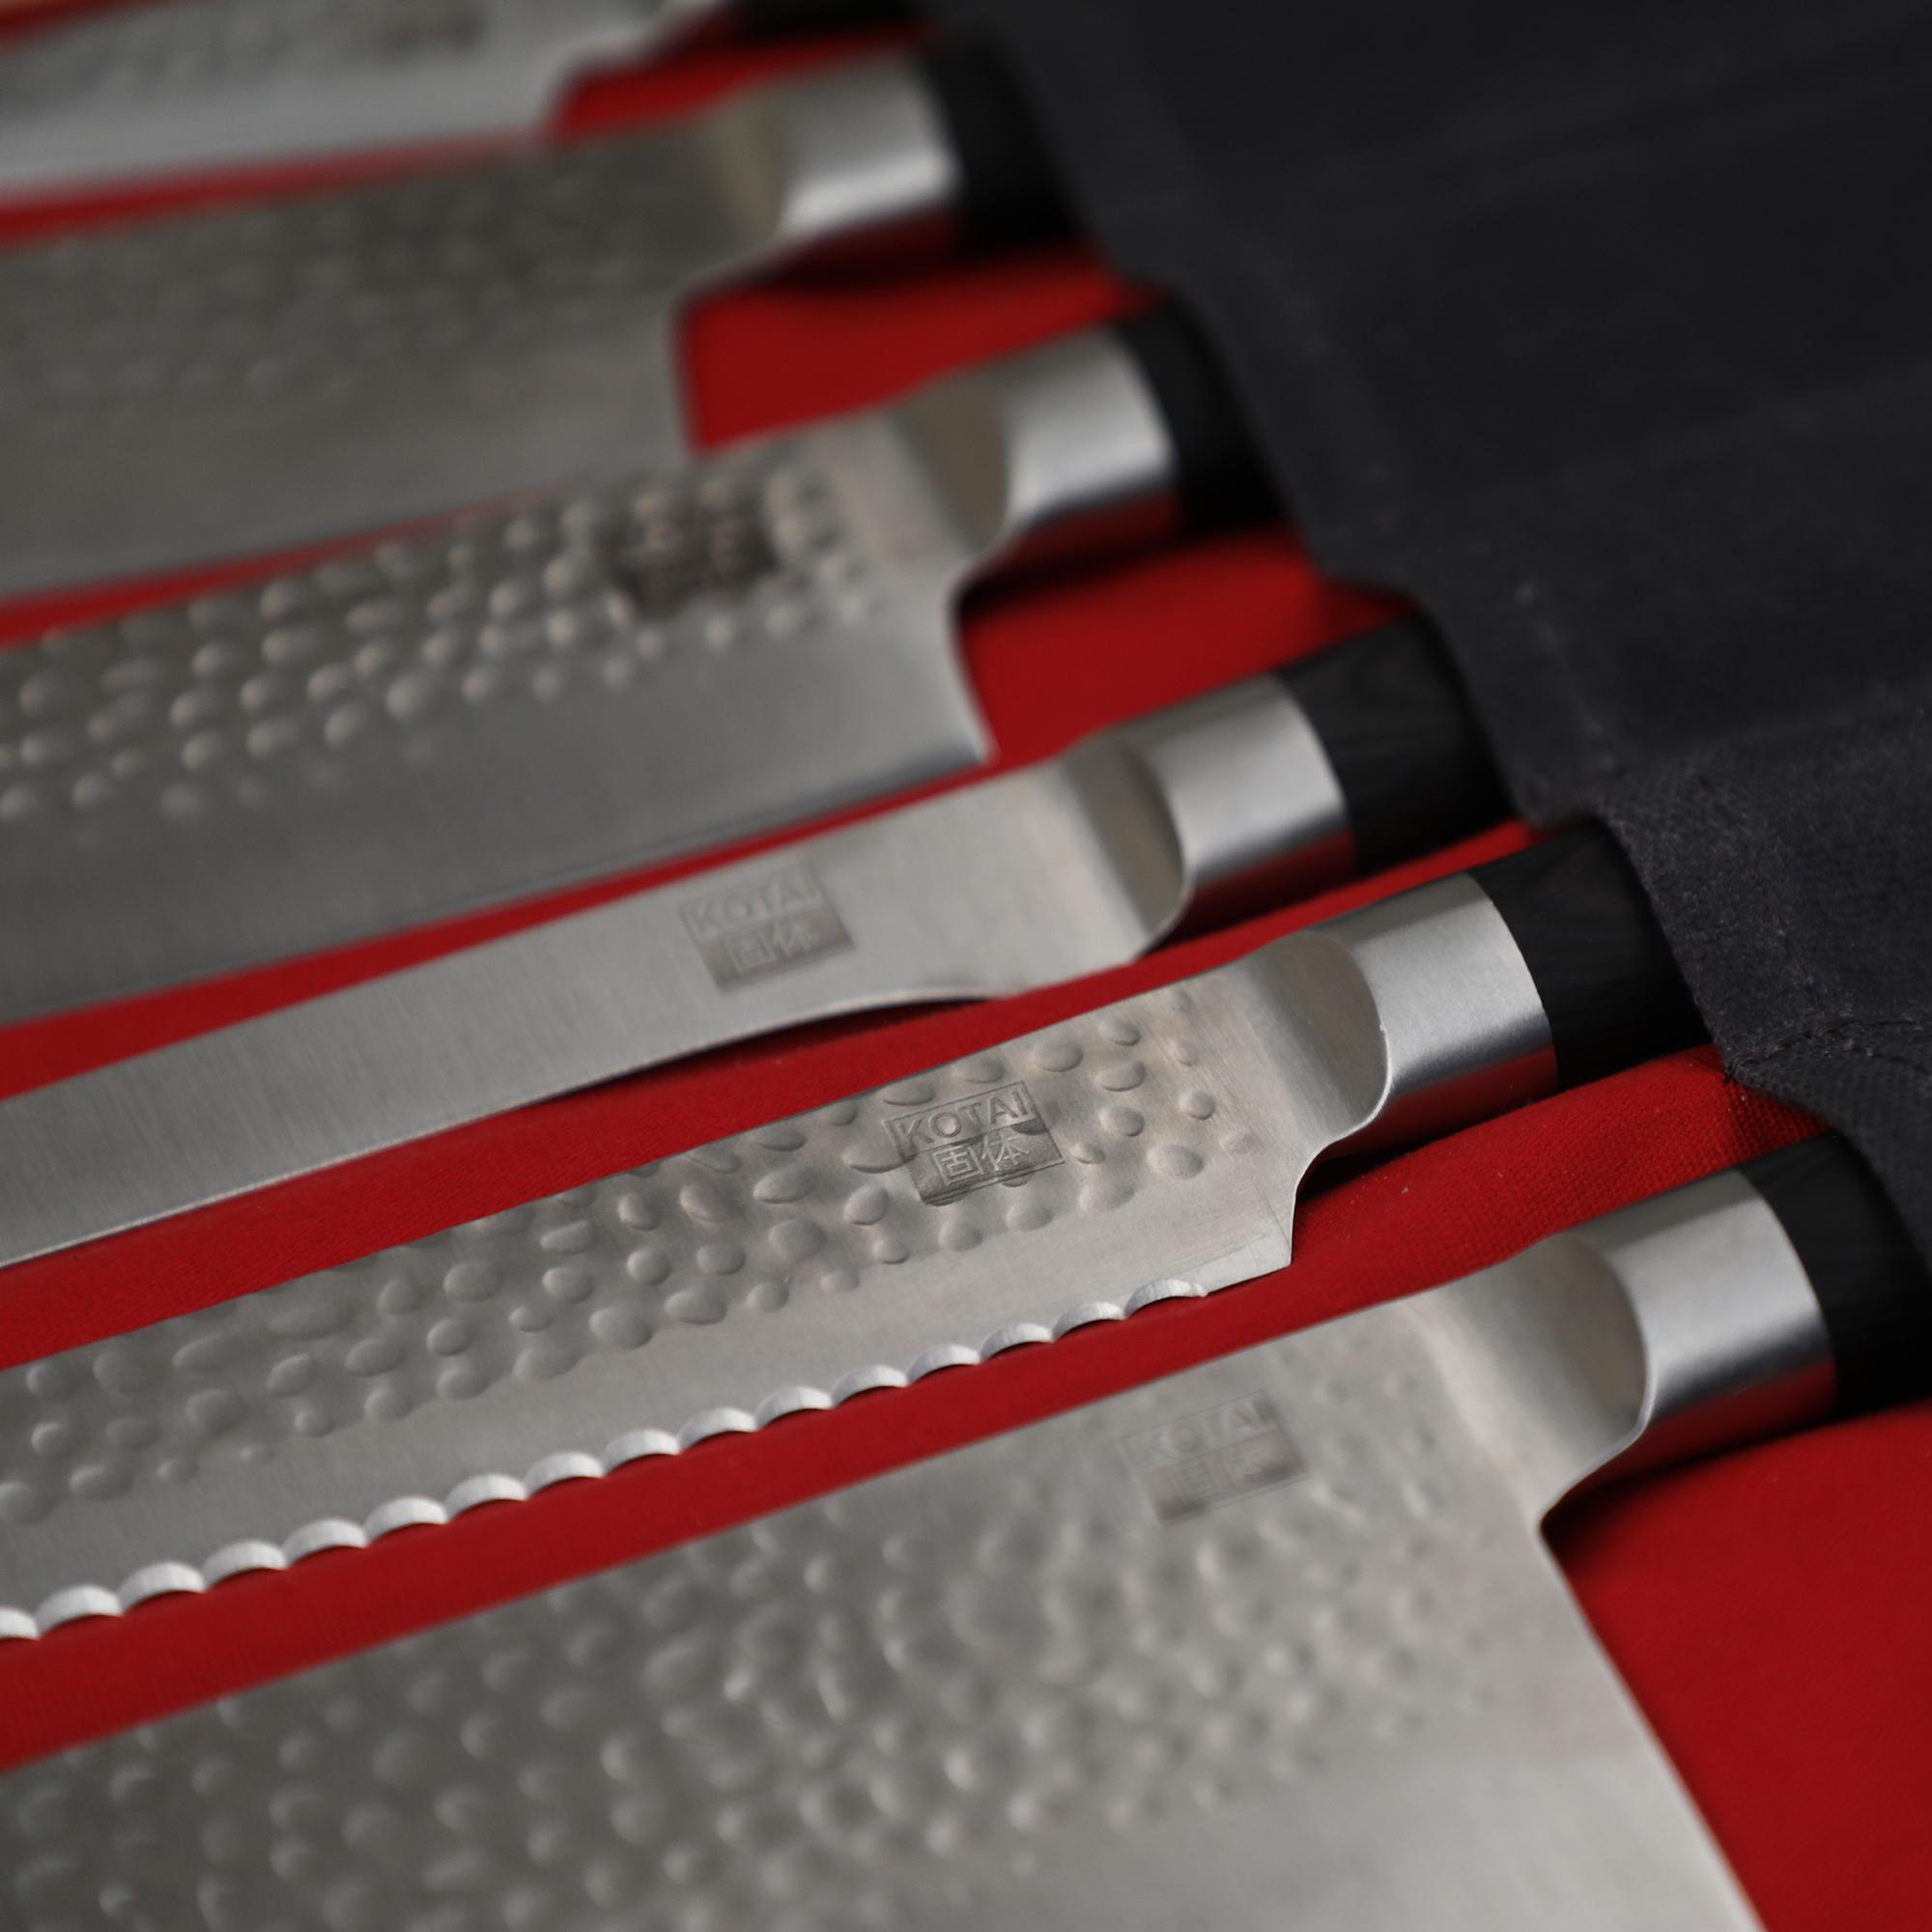 Étui à Couteaux | Sac de Rangement (jusqu'à 7 couteaux) | Poignées et Lanières en Cuir